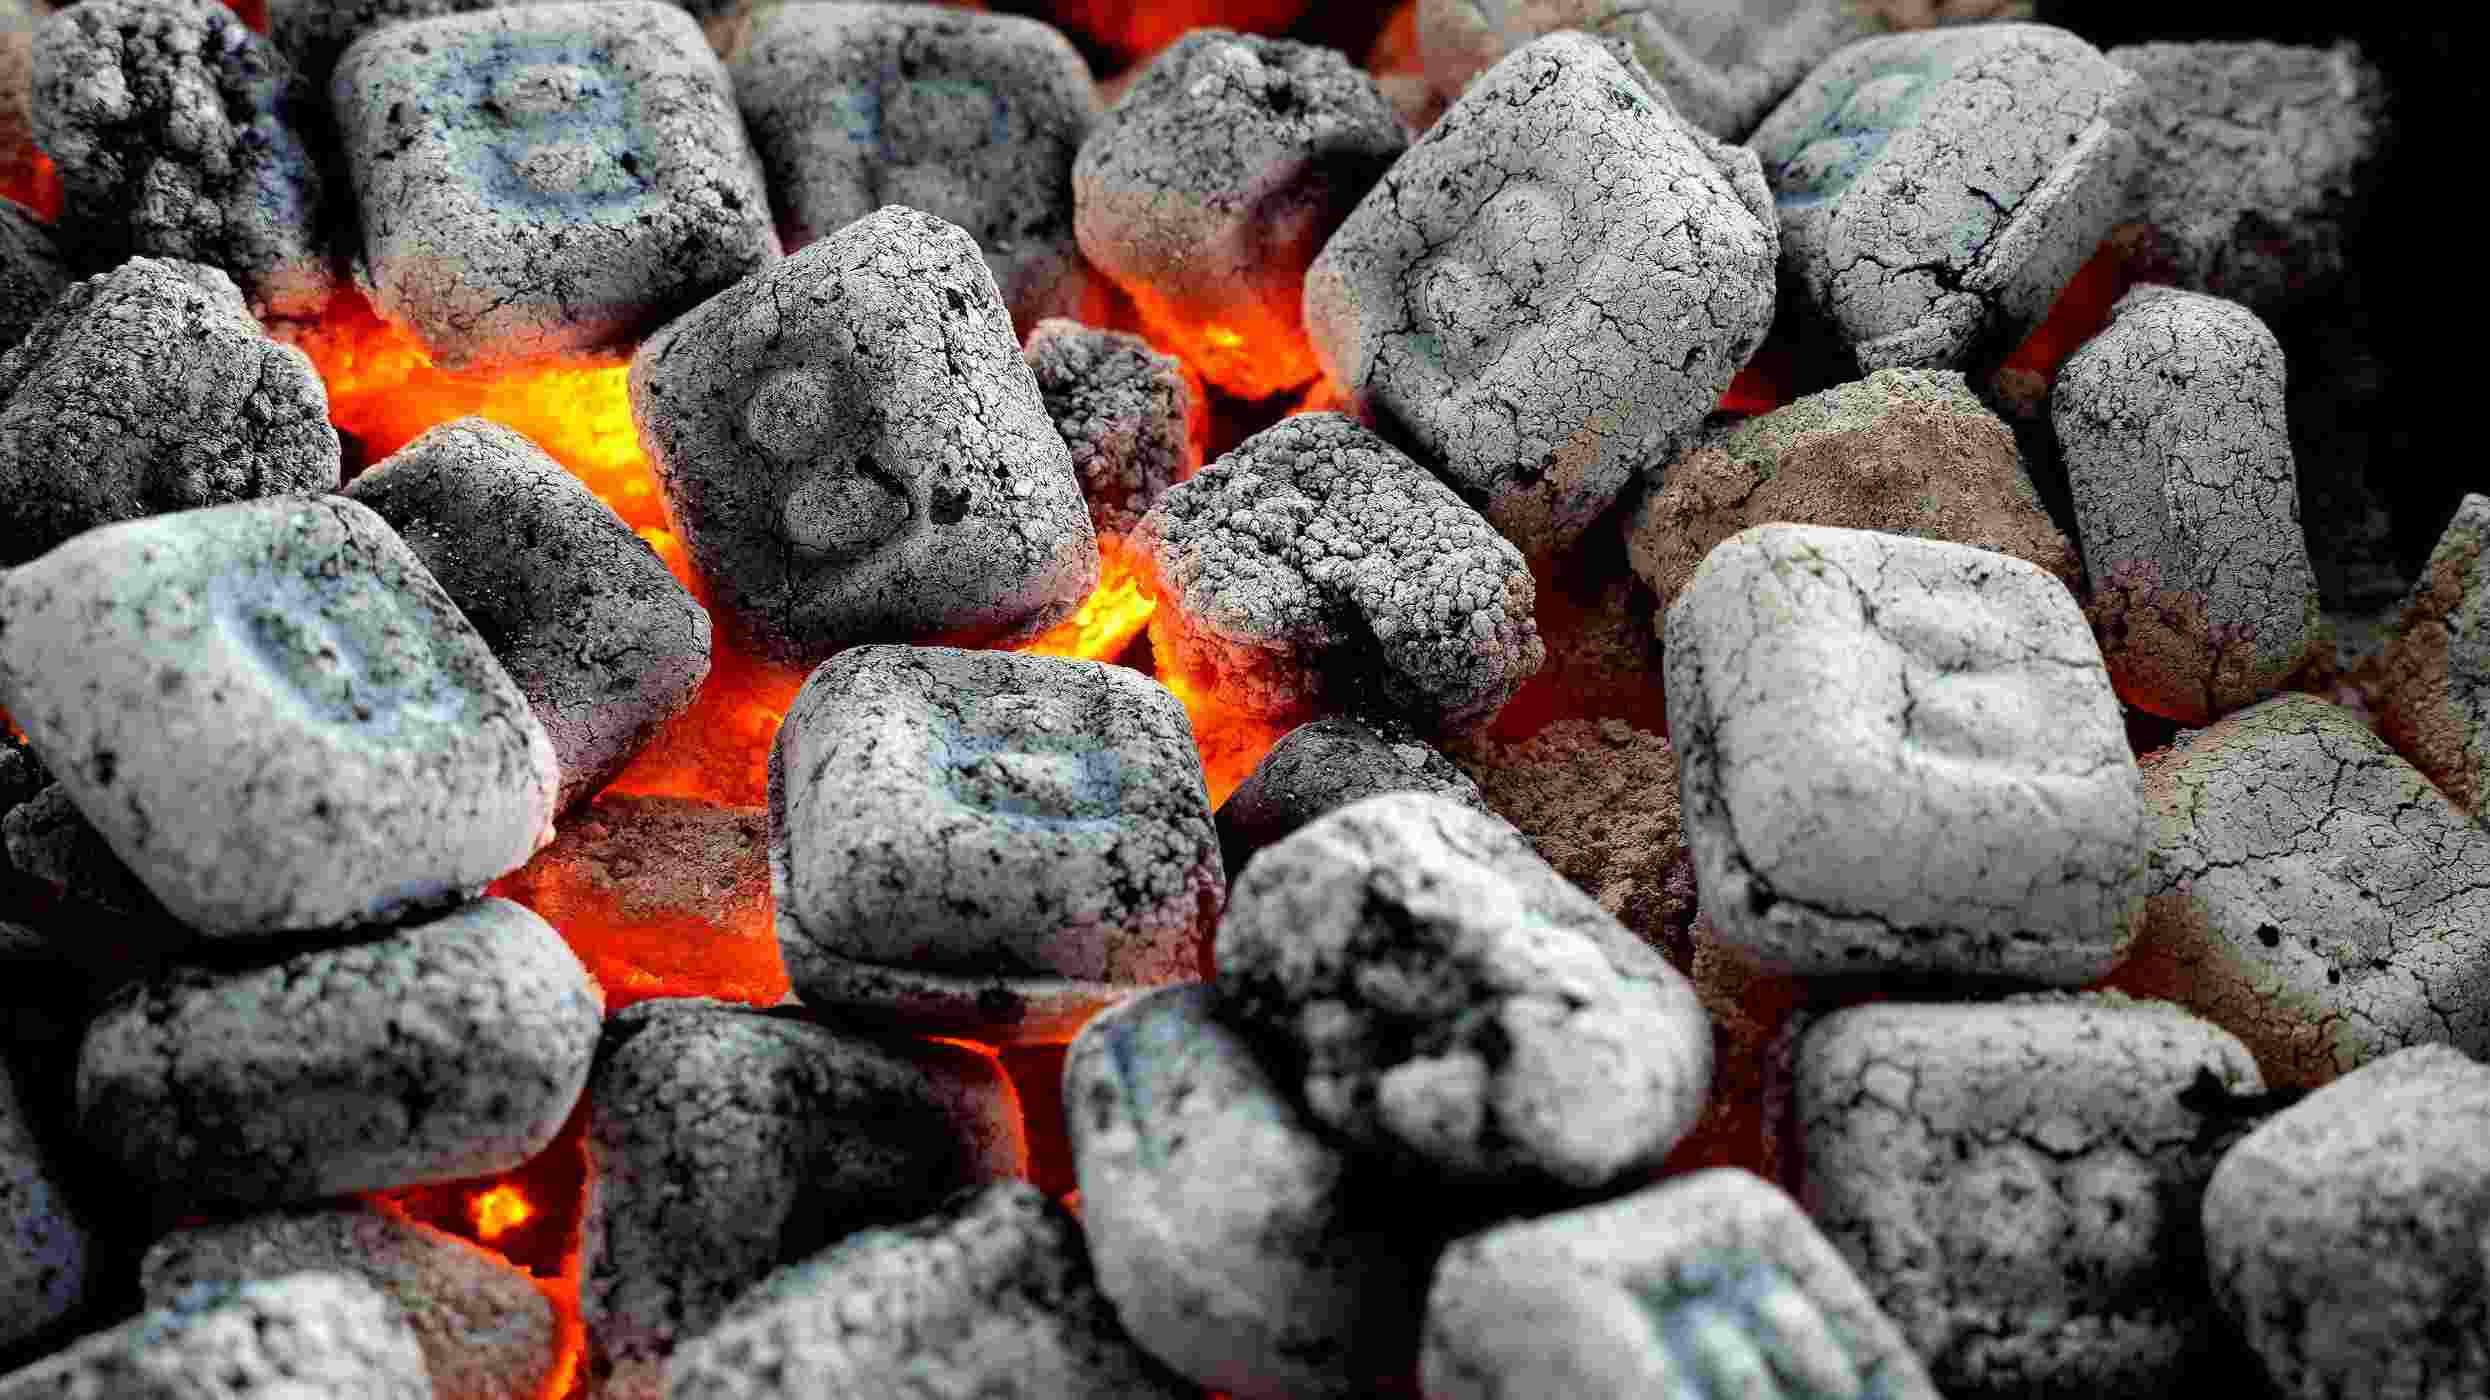 B&B Charcoal Oak Charcoal Briquets; image 3 of 5